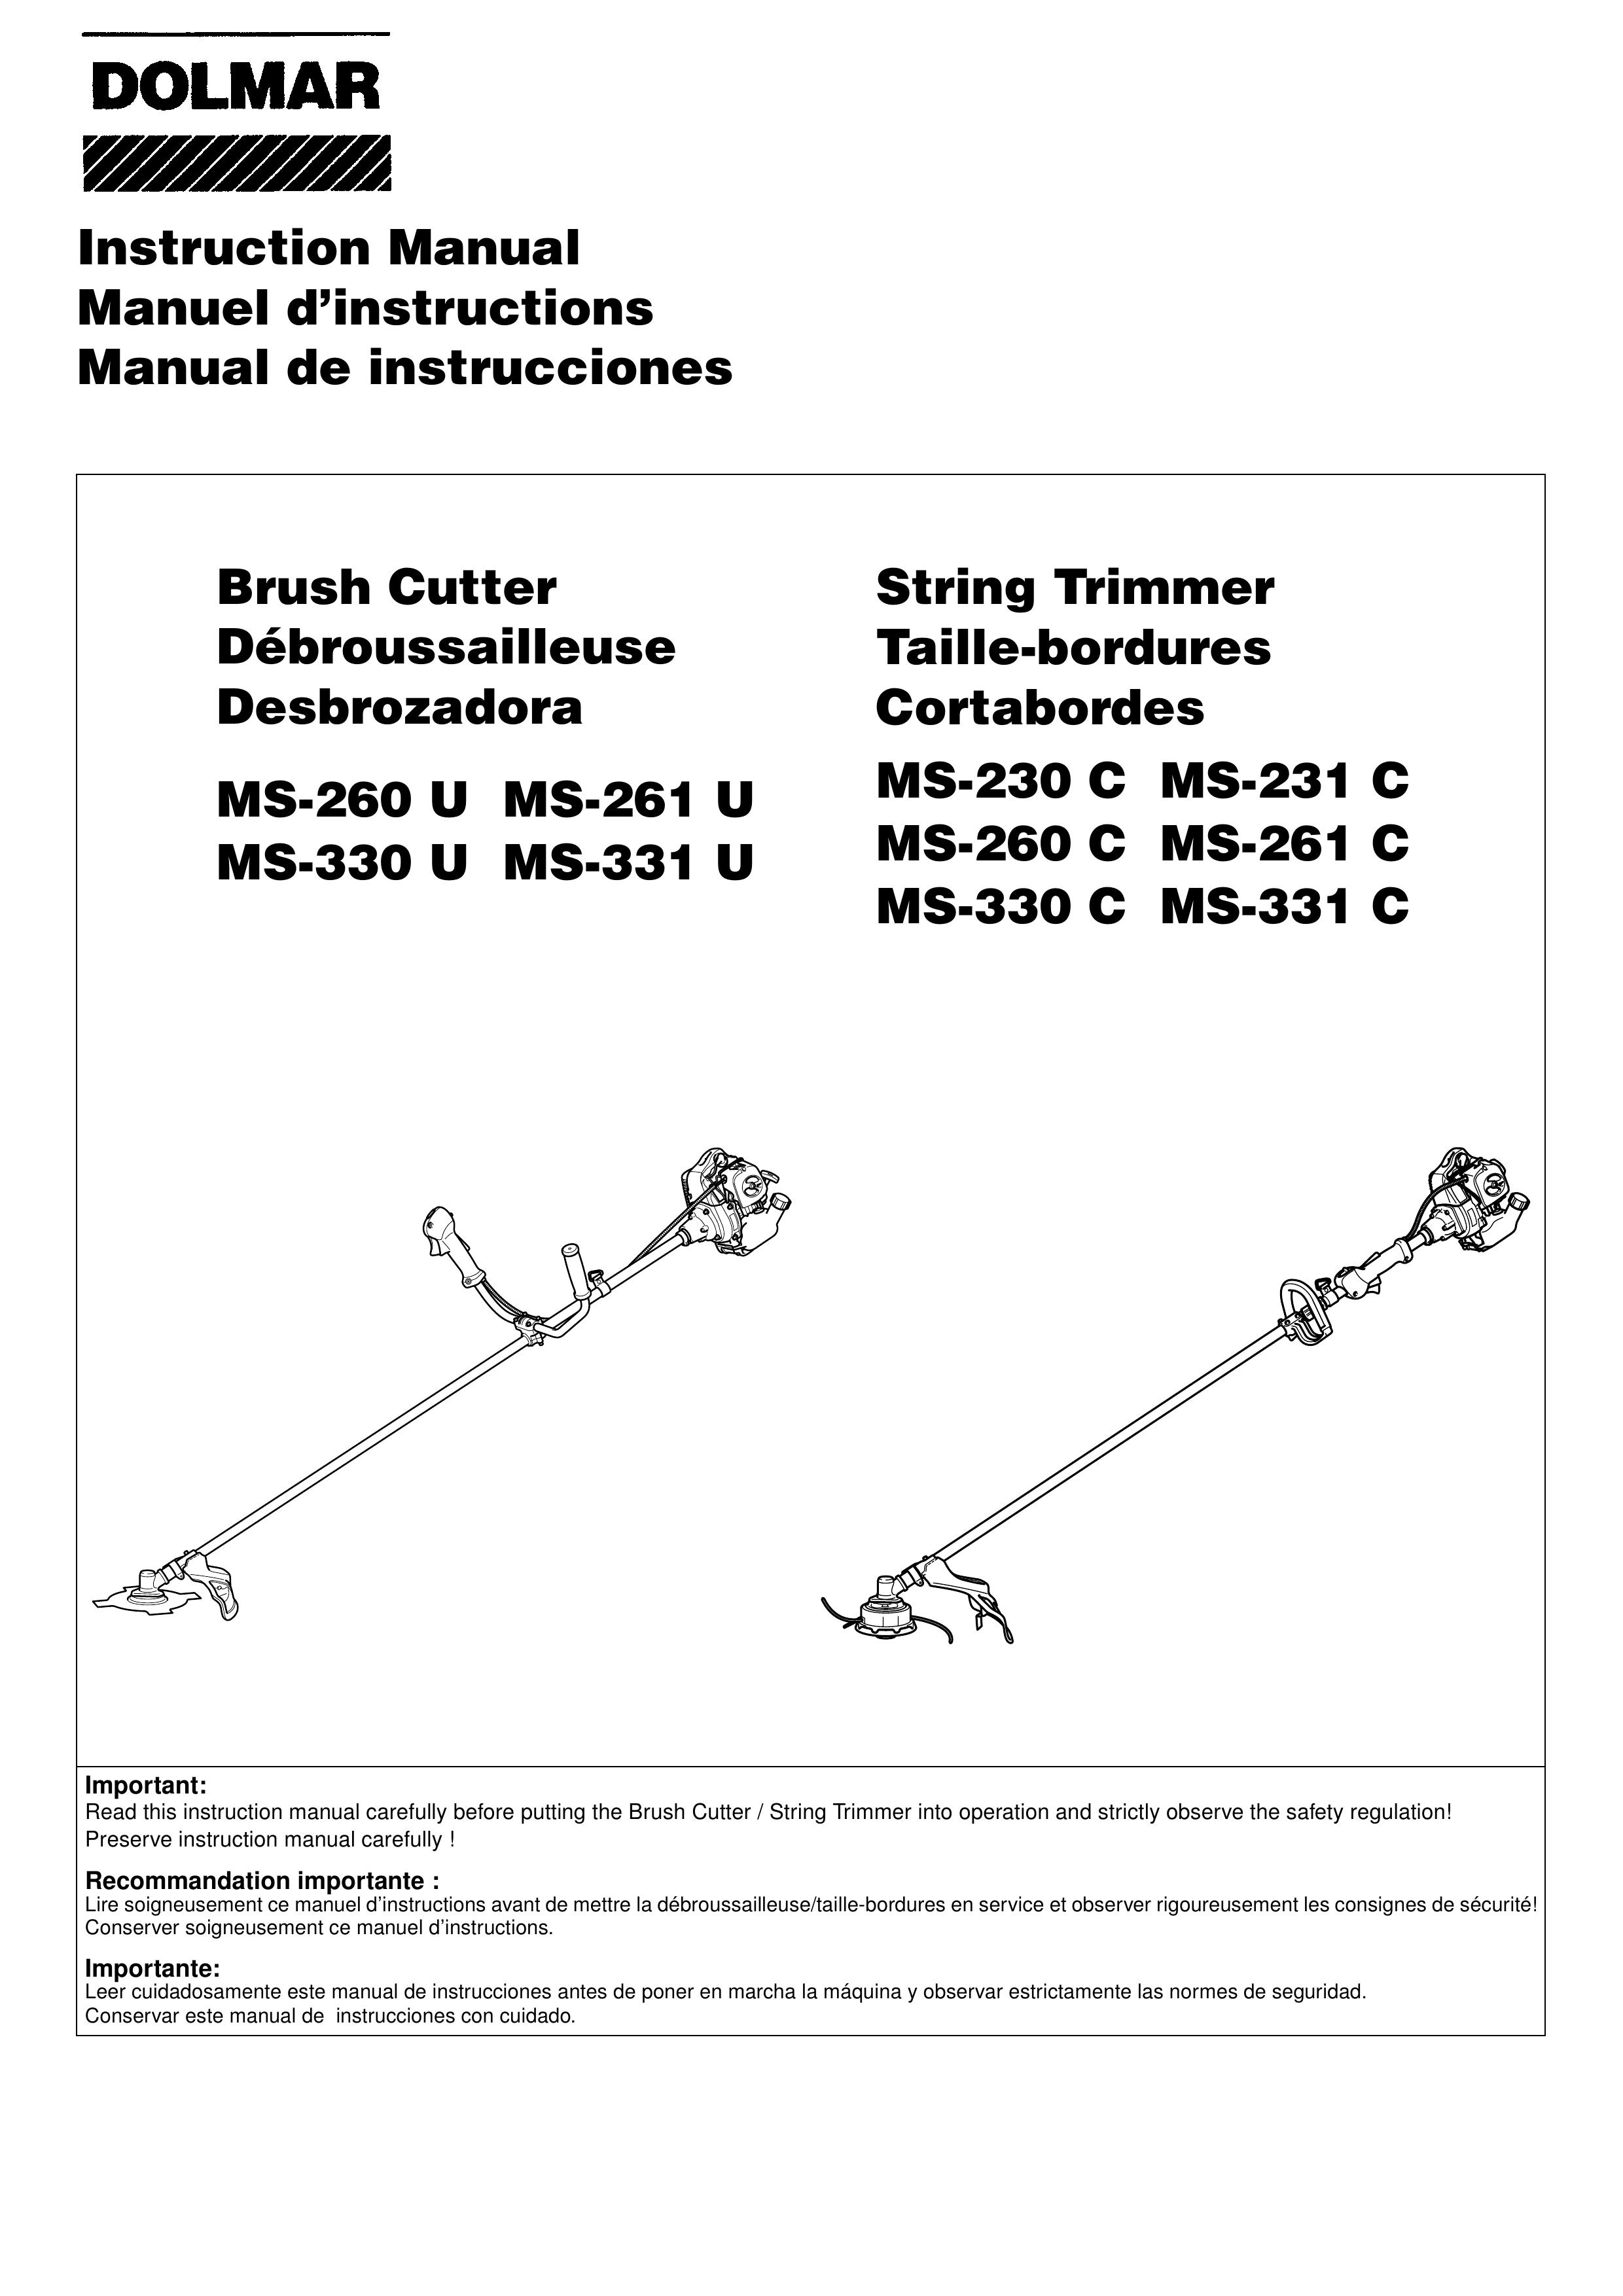 Dolmar MS-260 U Brush Cutter User Manual